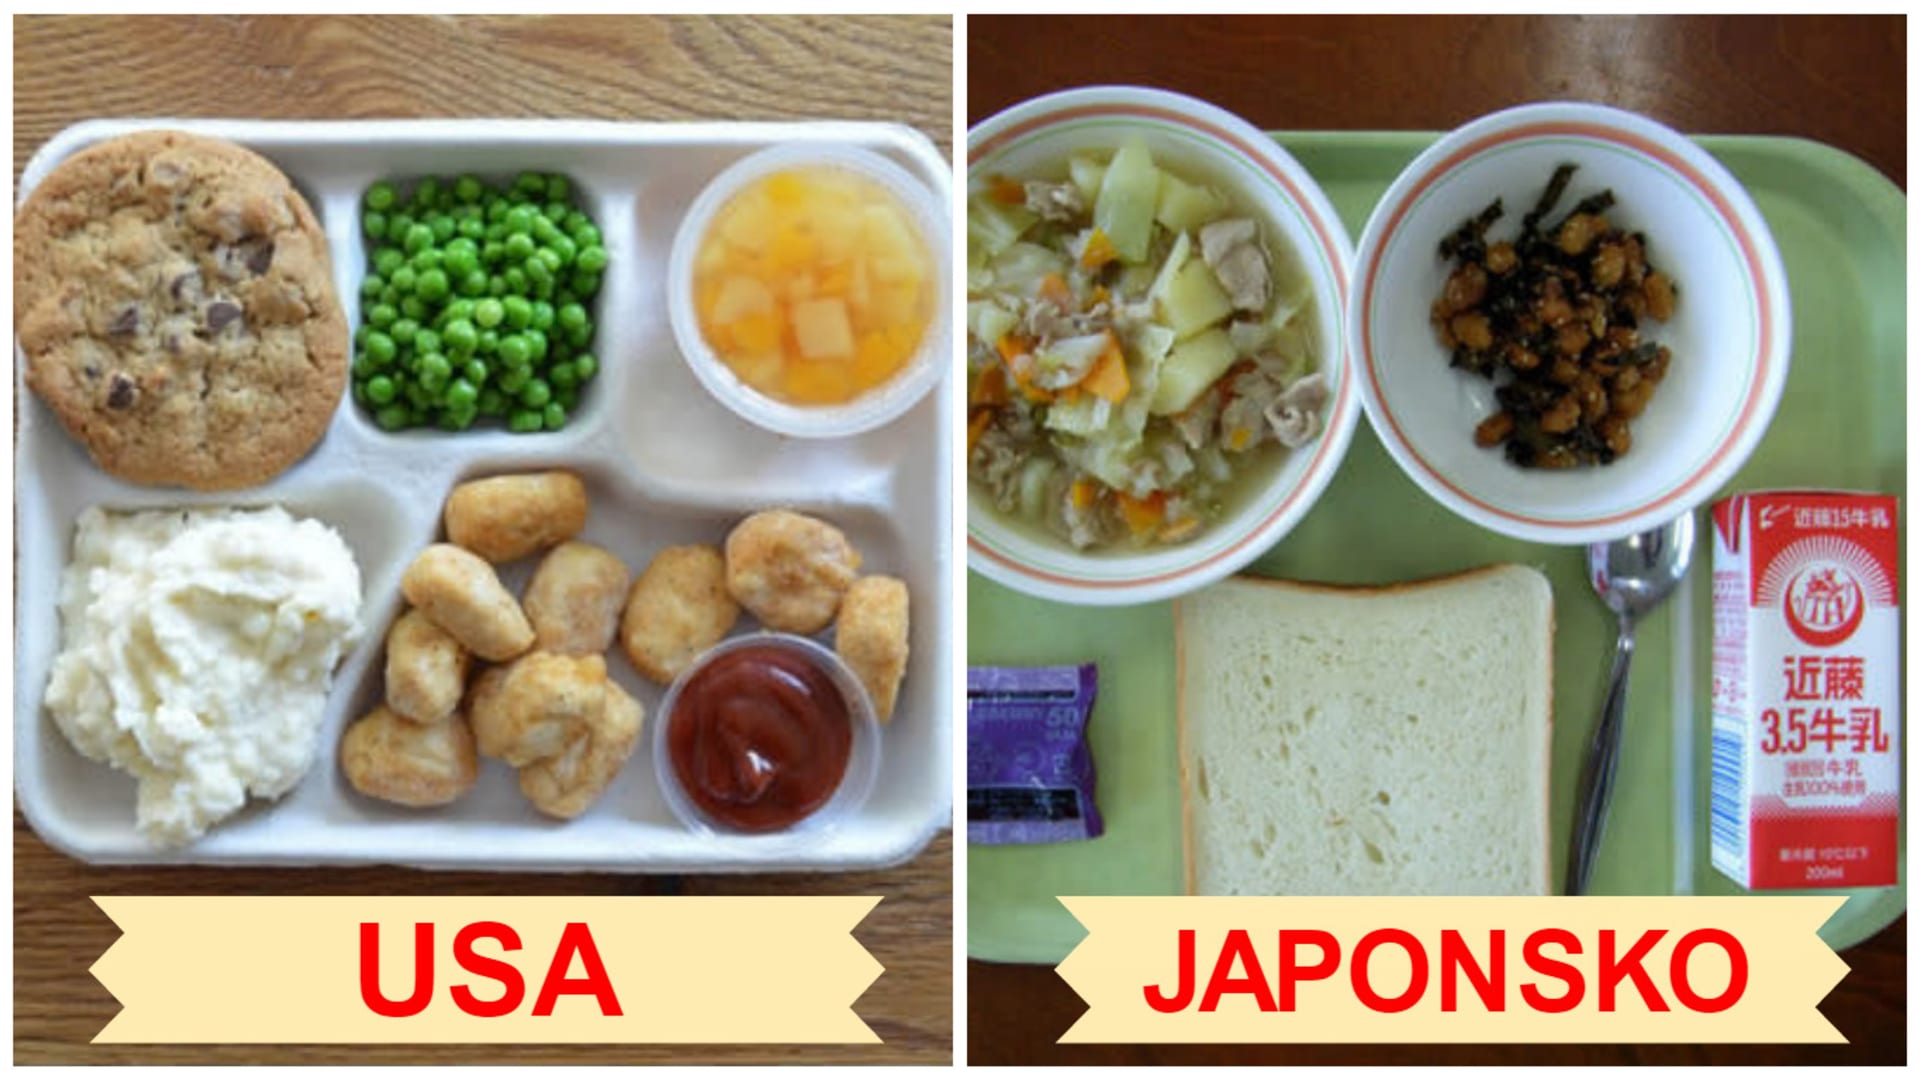 Typický školní oběd v USA a v Japonsku.